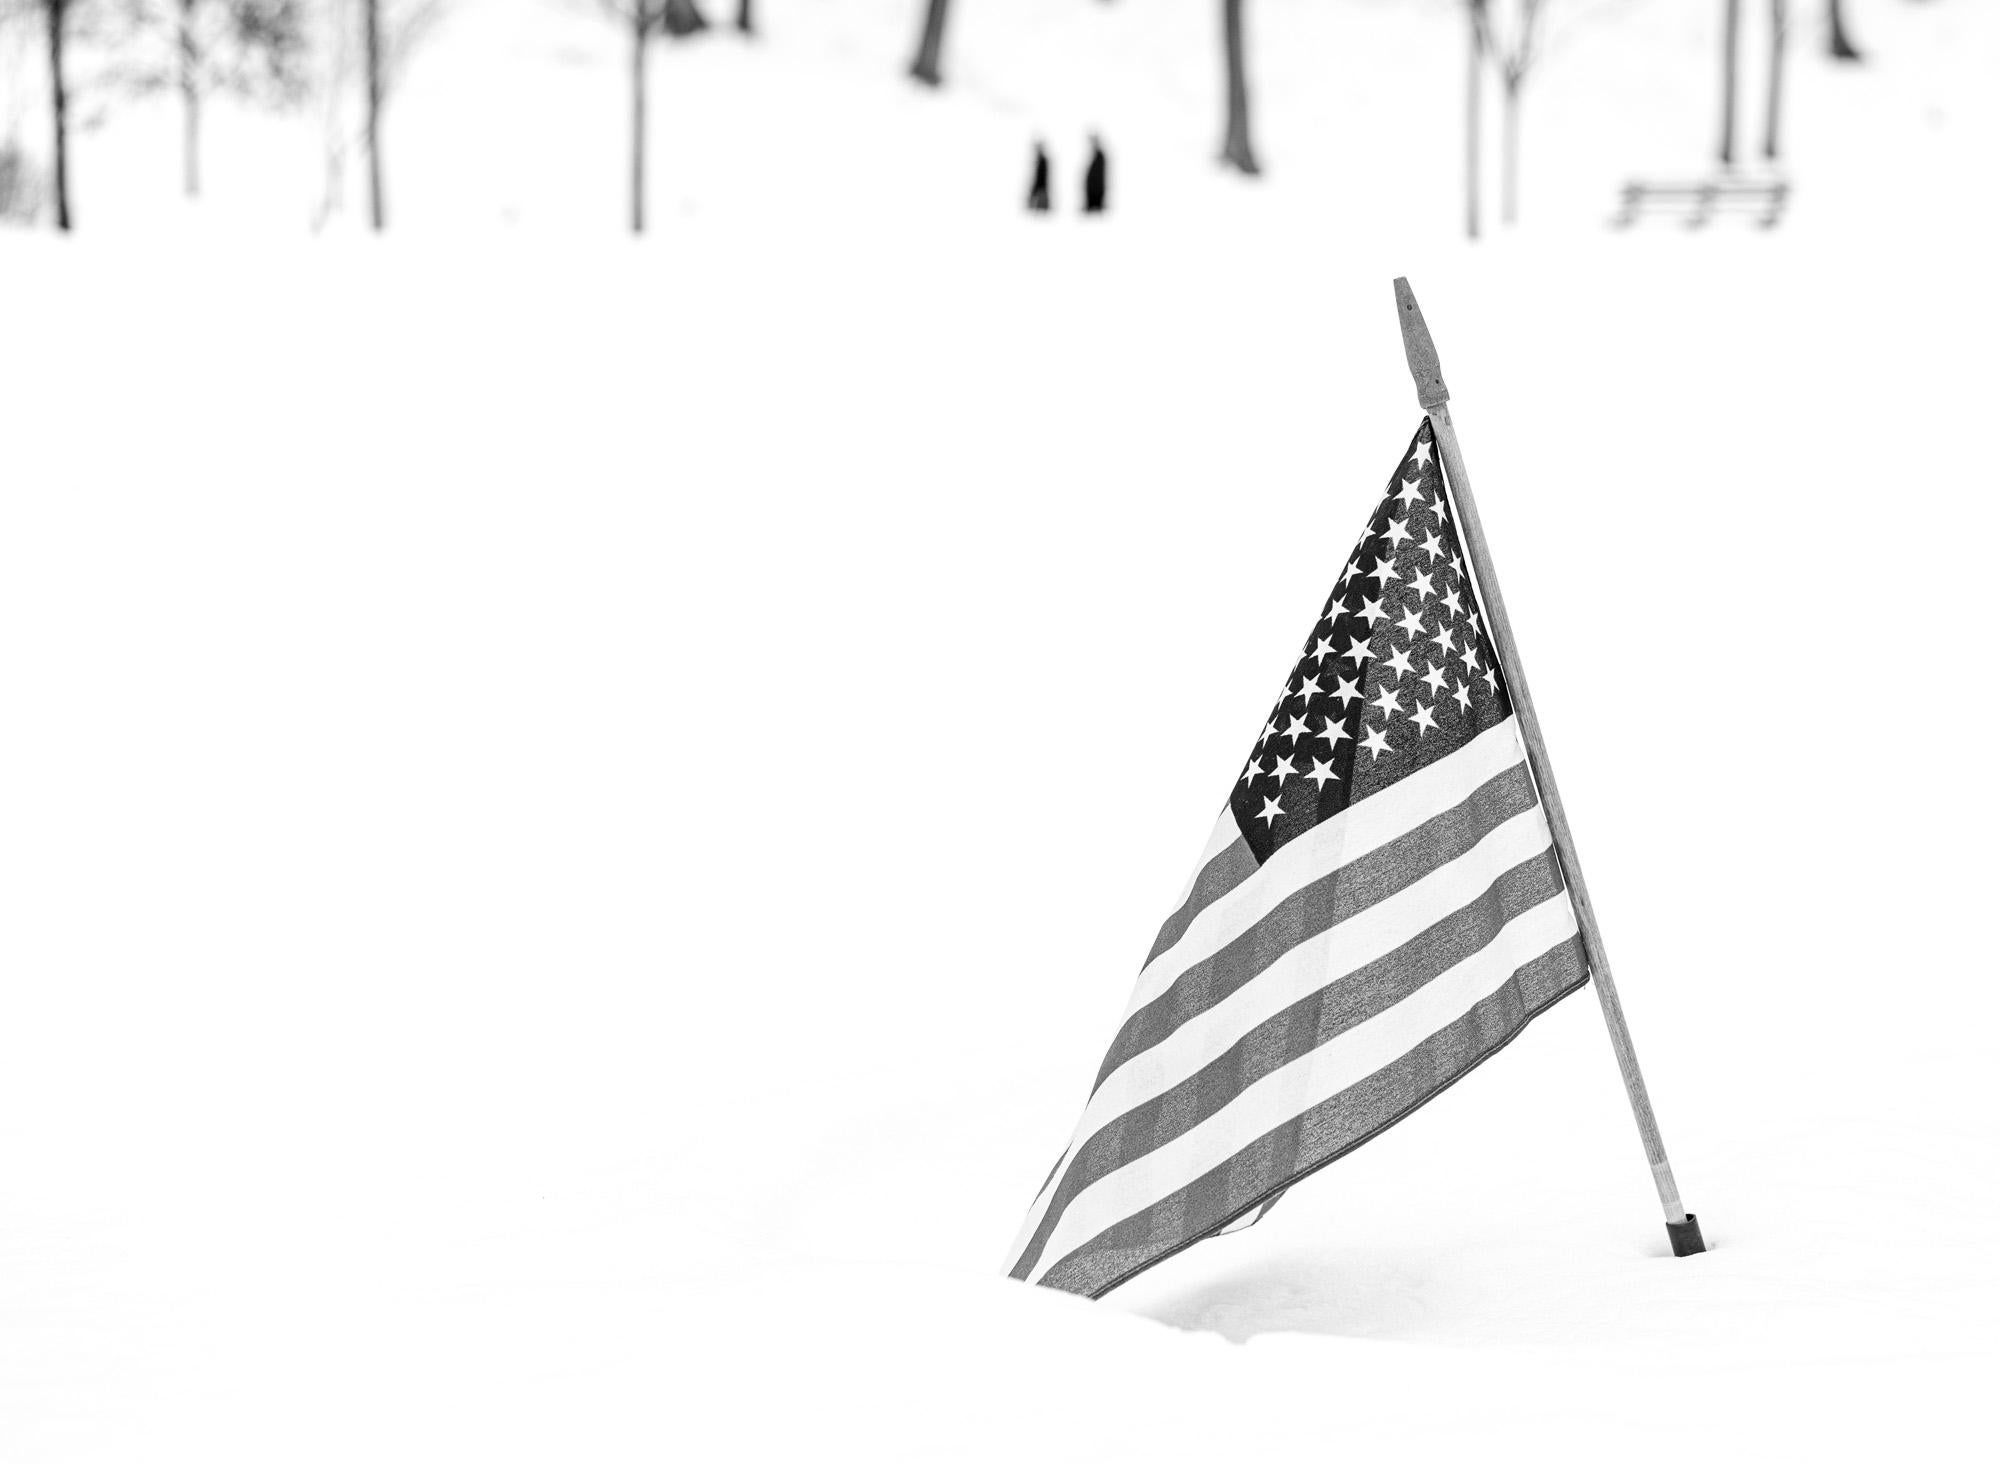 Black and White Photograph Howard Lewis - Photographie « American Winter » en noir et blanc, édition limitée 2021, patriotisme